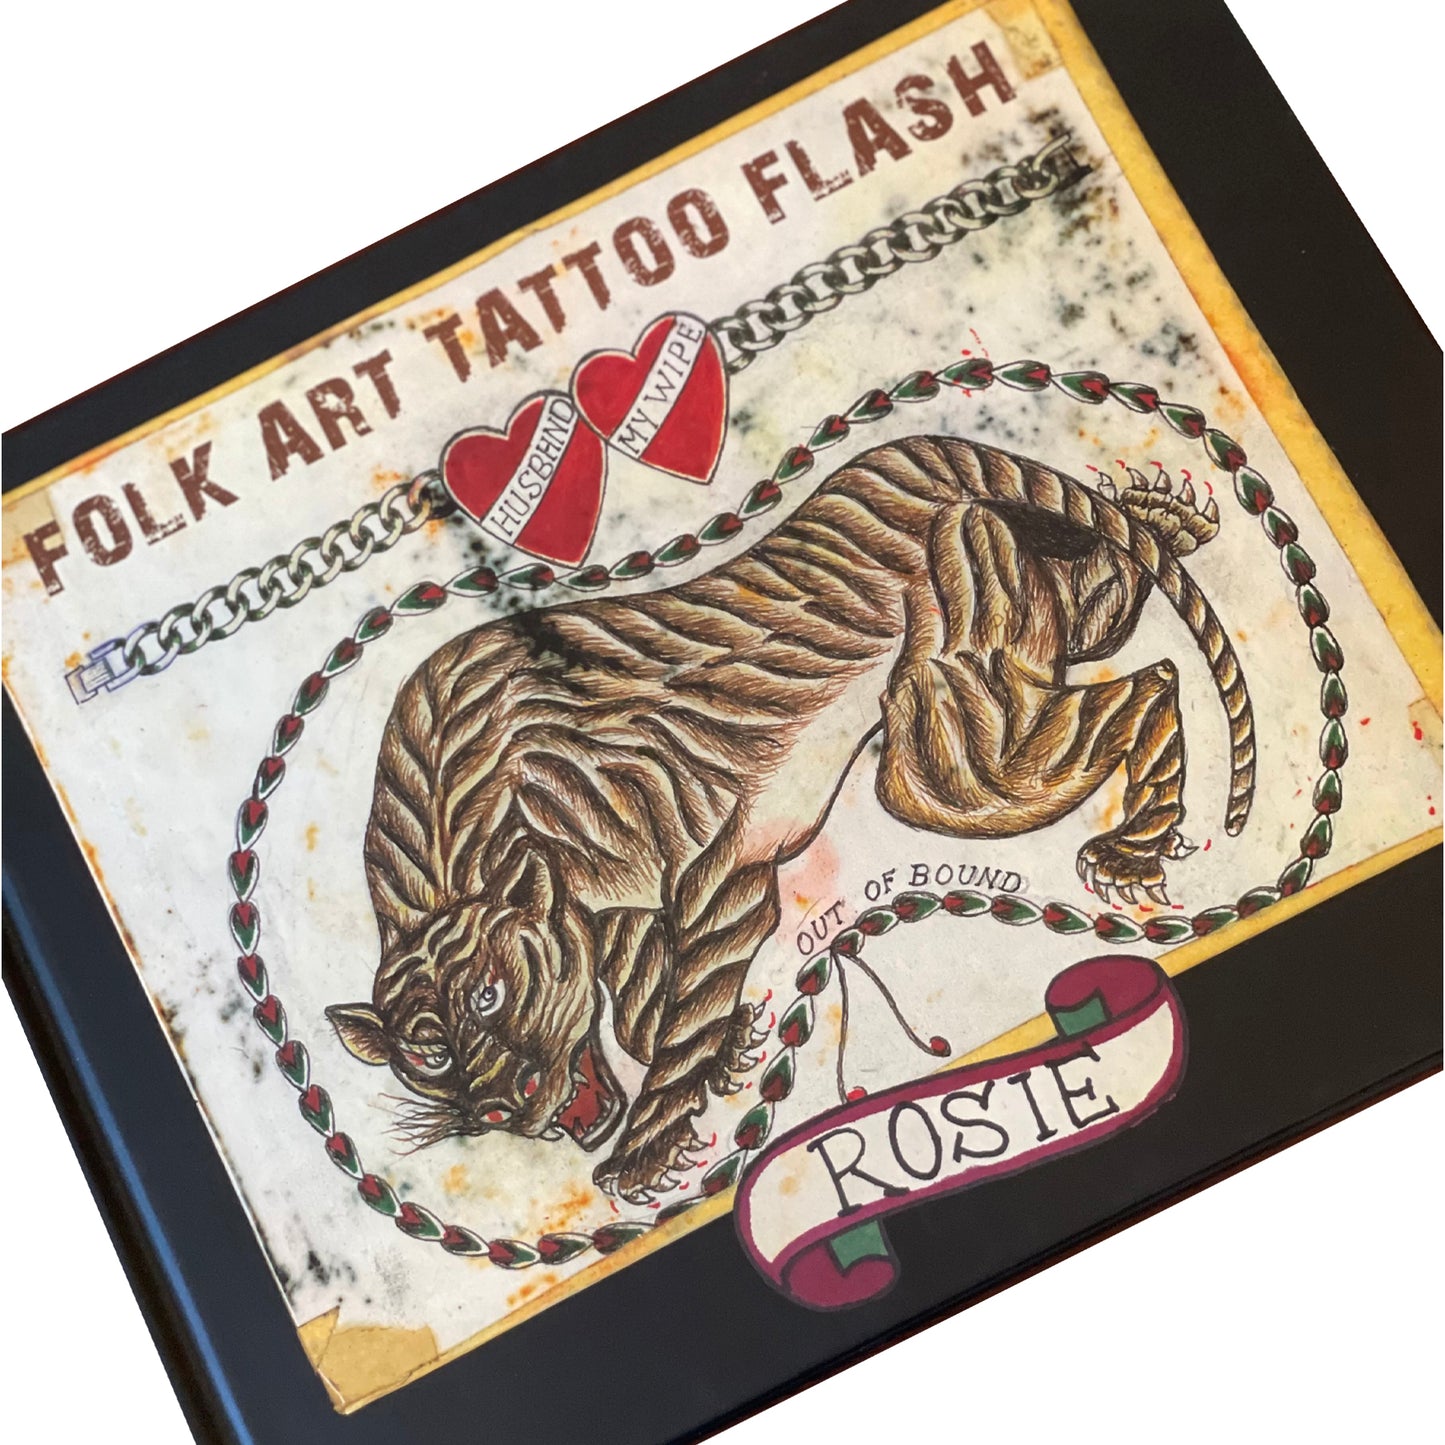 FOLK ART TATTOO FLASH - ROSIE by Don Ed Hardy